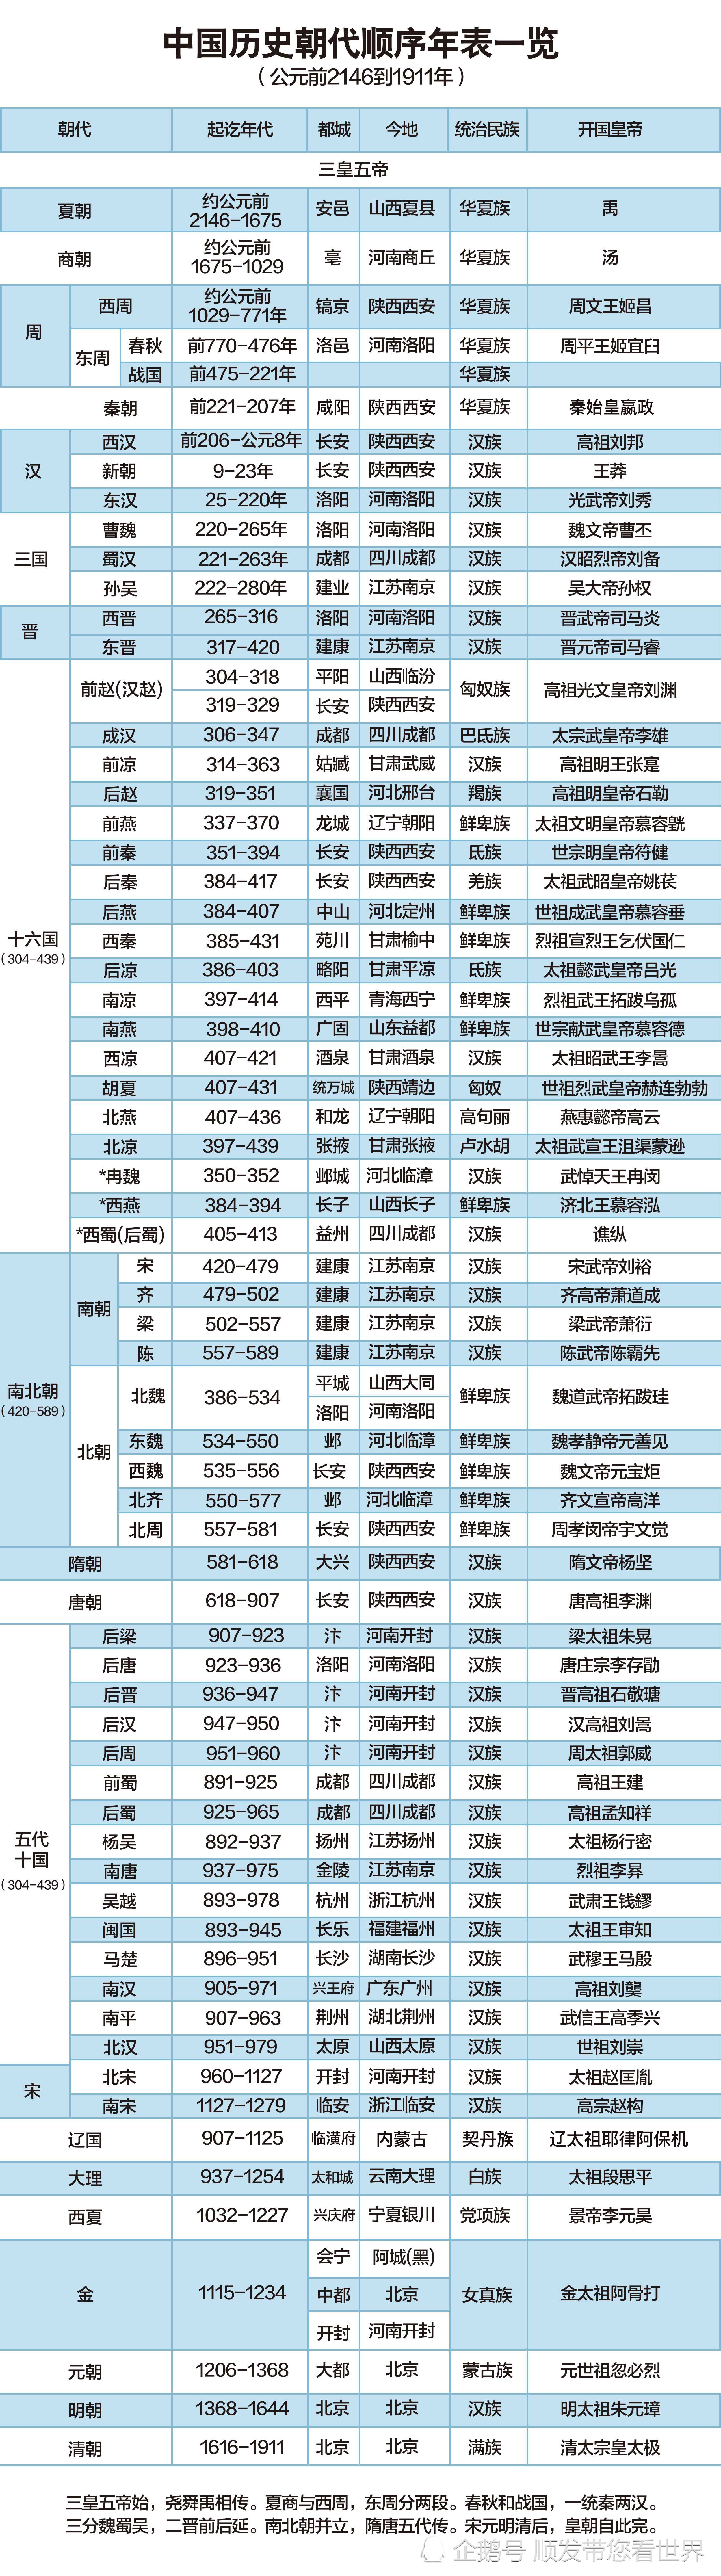 中国历史朝代顺序年表一览(公元前2146到1911年)